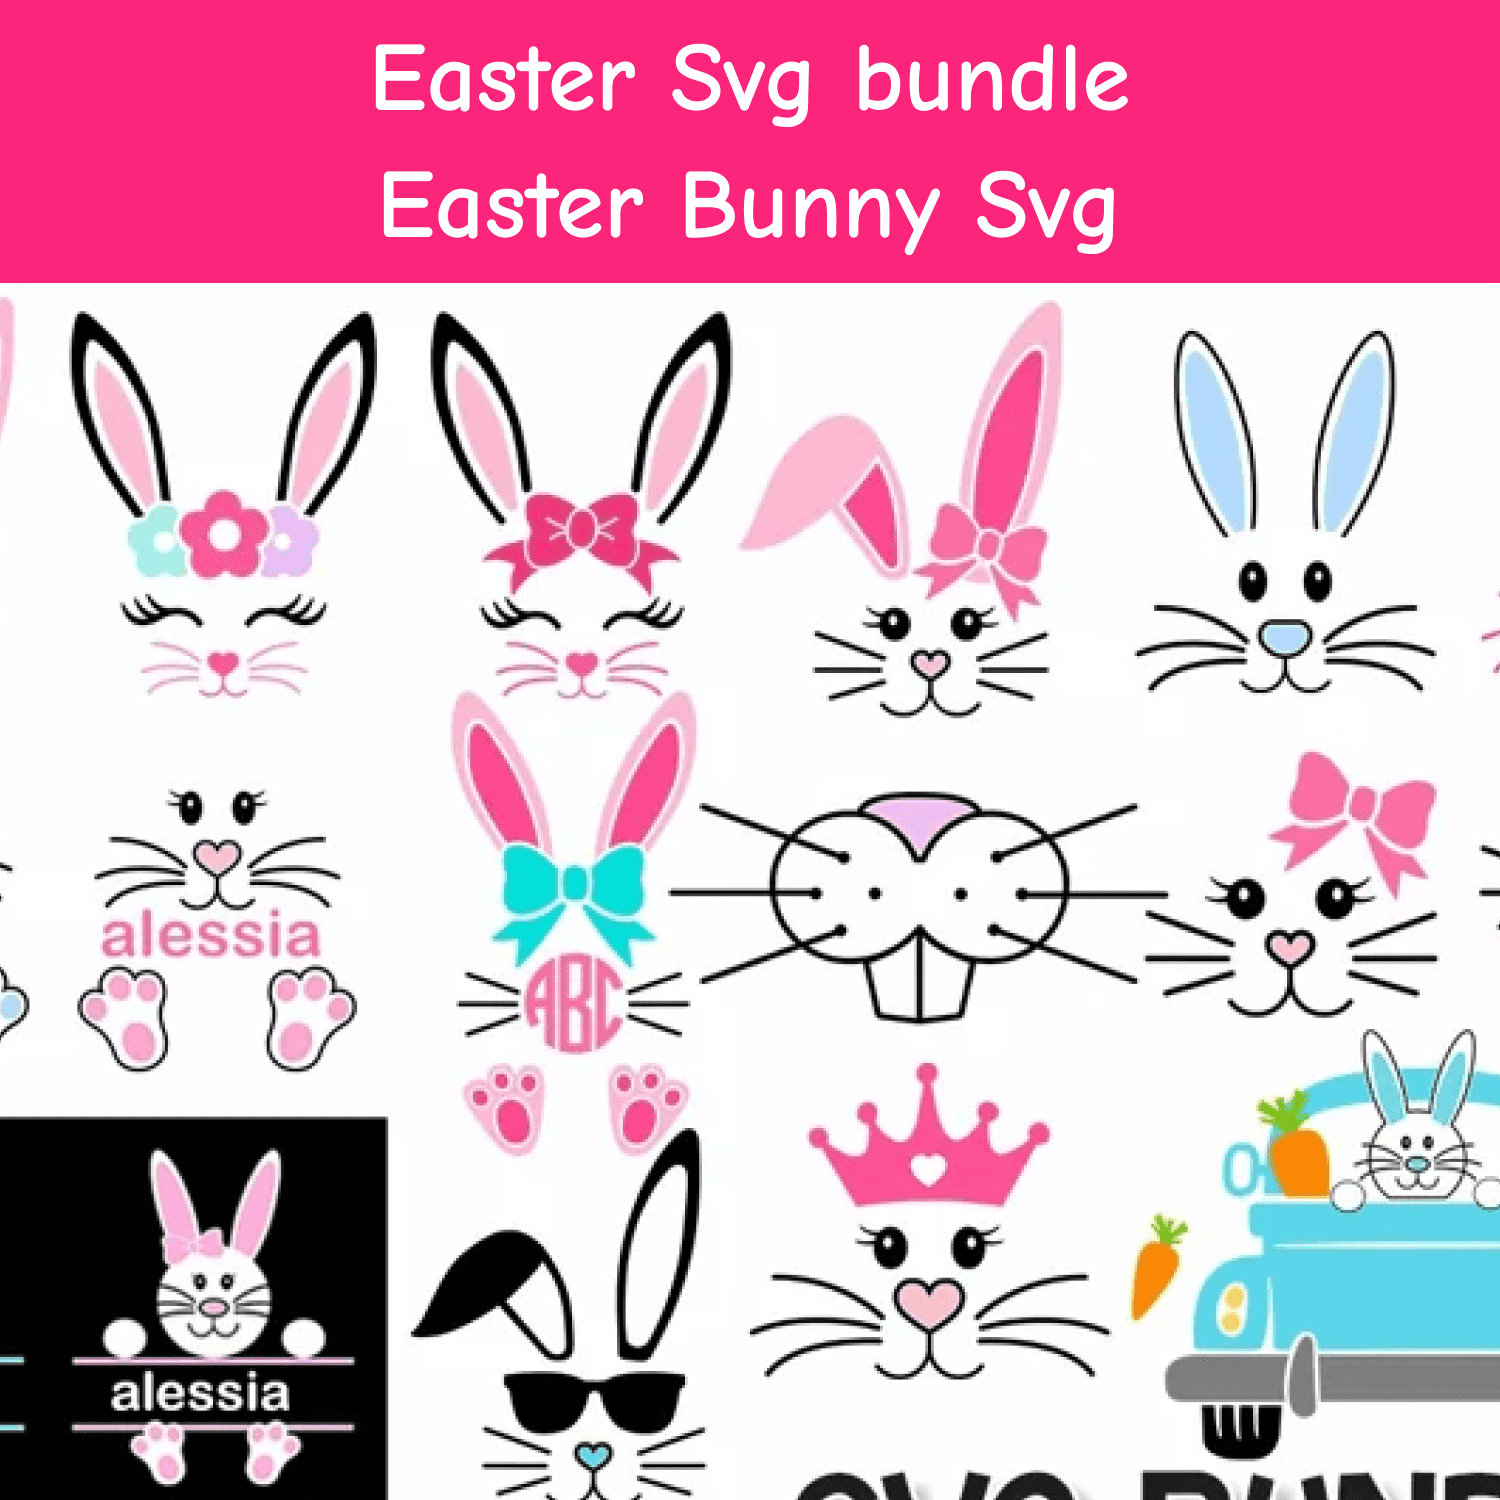 Easter Svg bundle, Easter Bunny Svg.